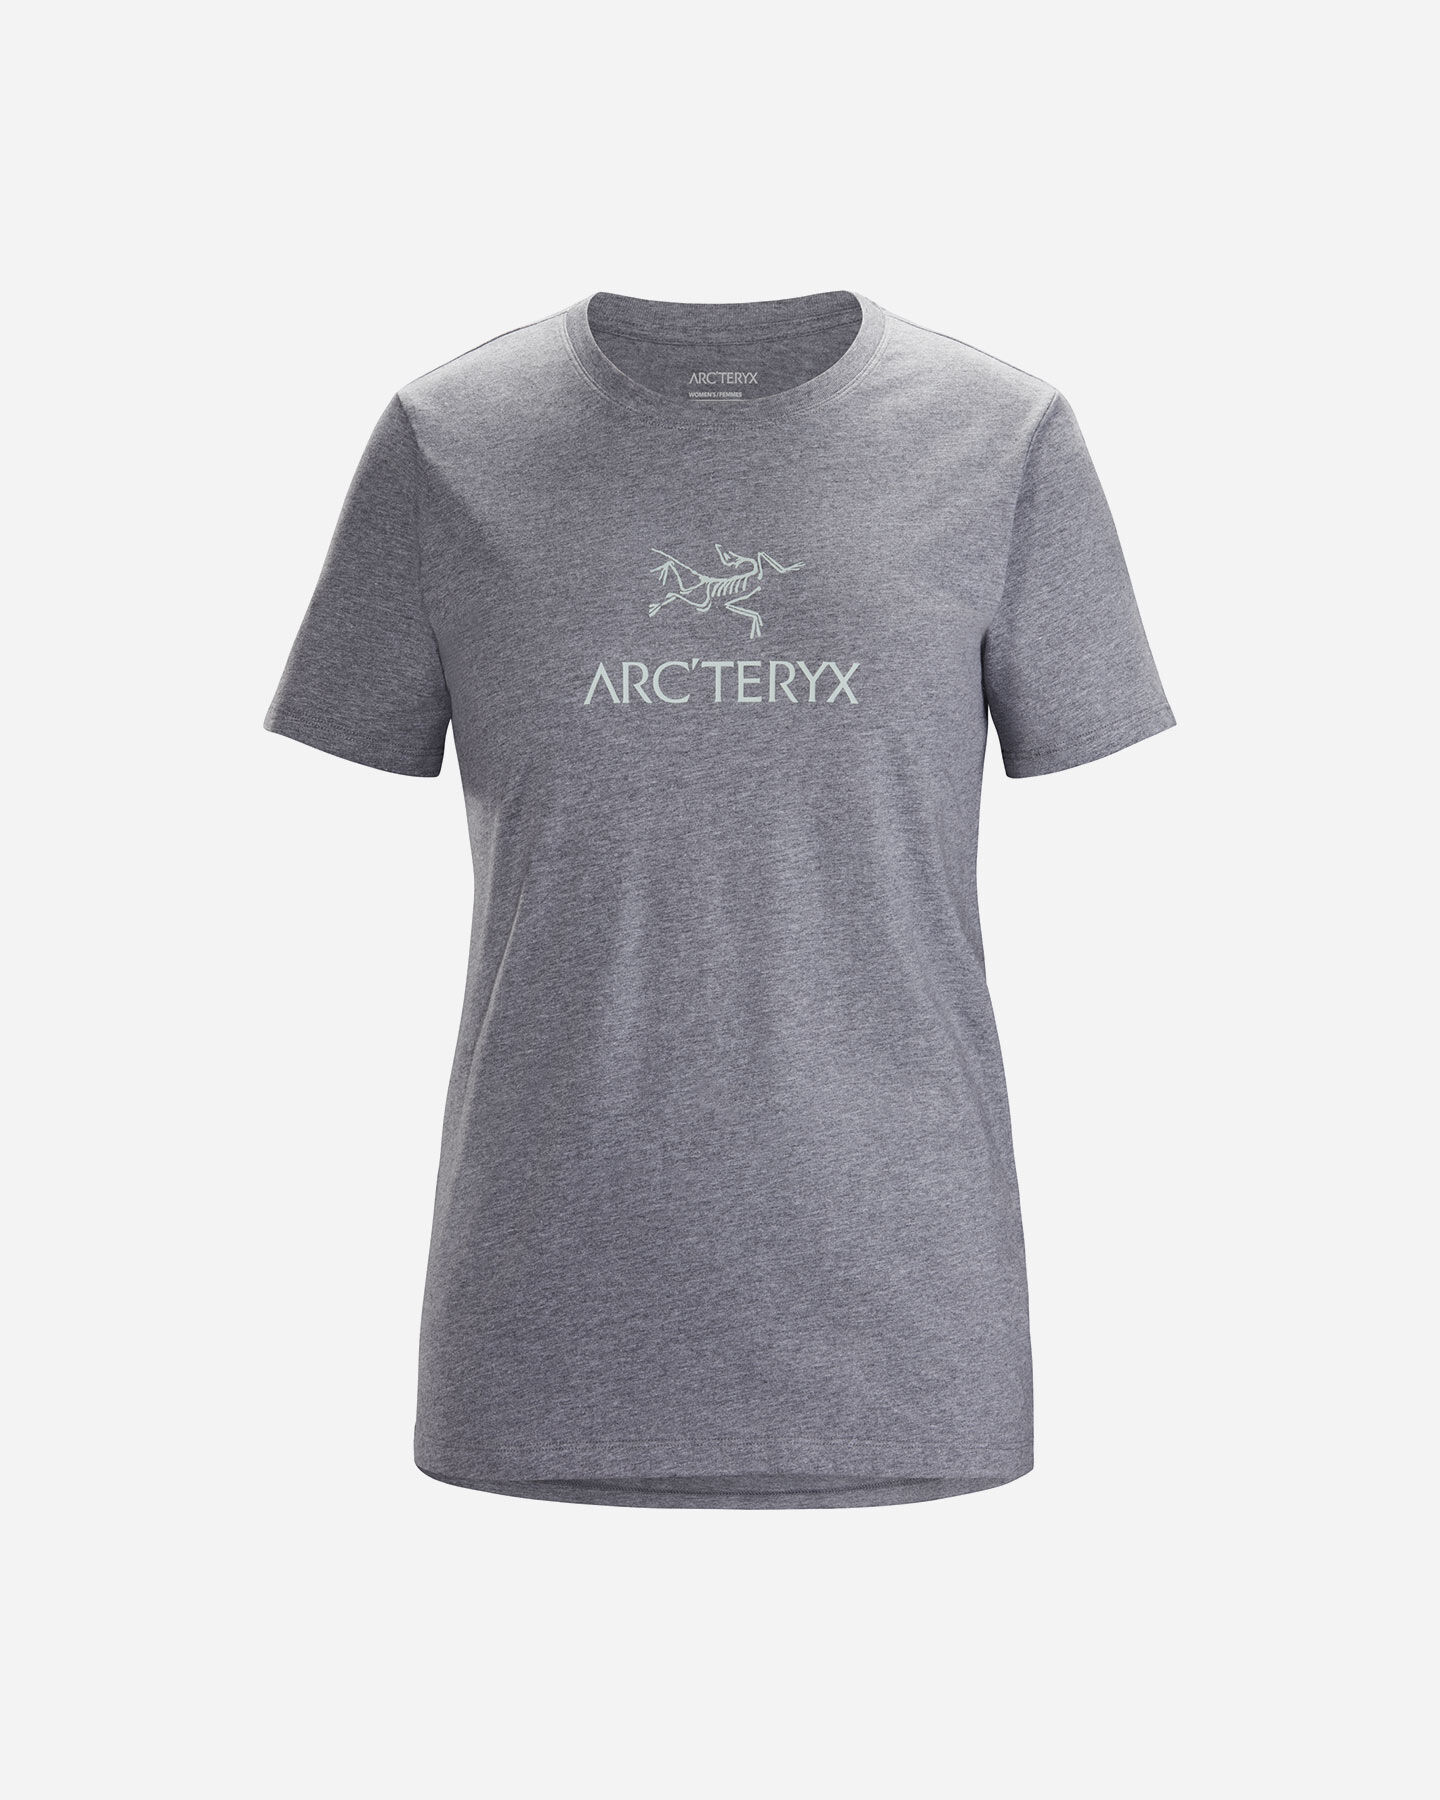  T-Shirt ARC'TERYX ARC'WORD W S4089773|1|XS scatto 0